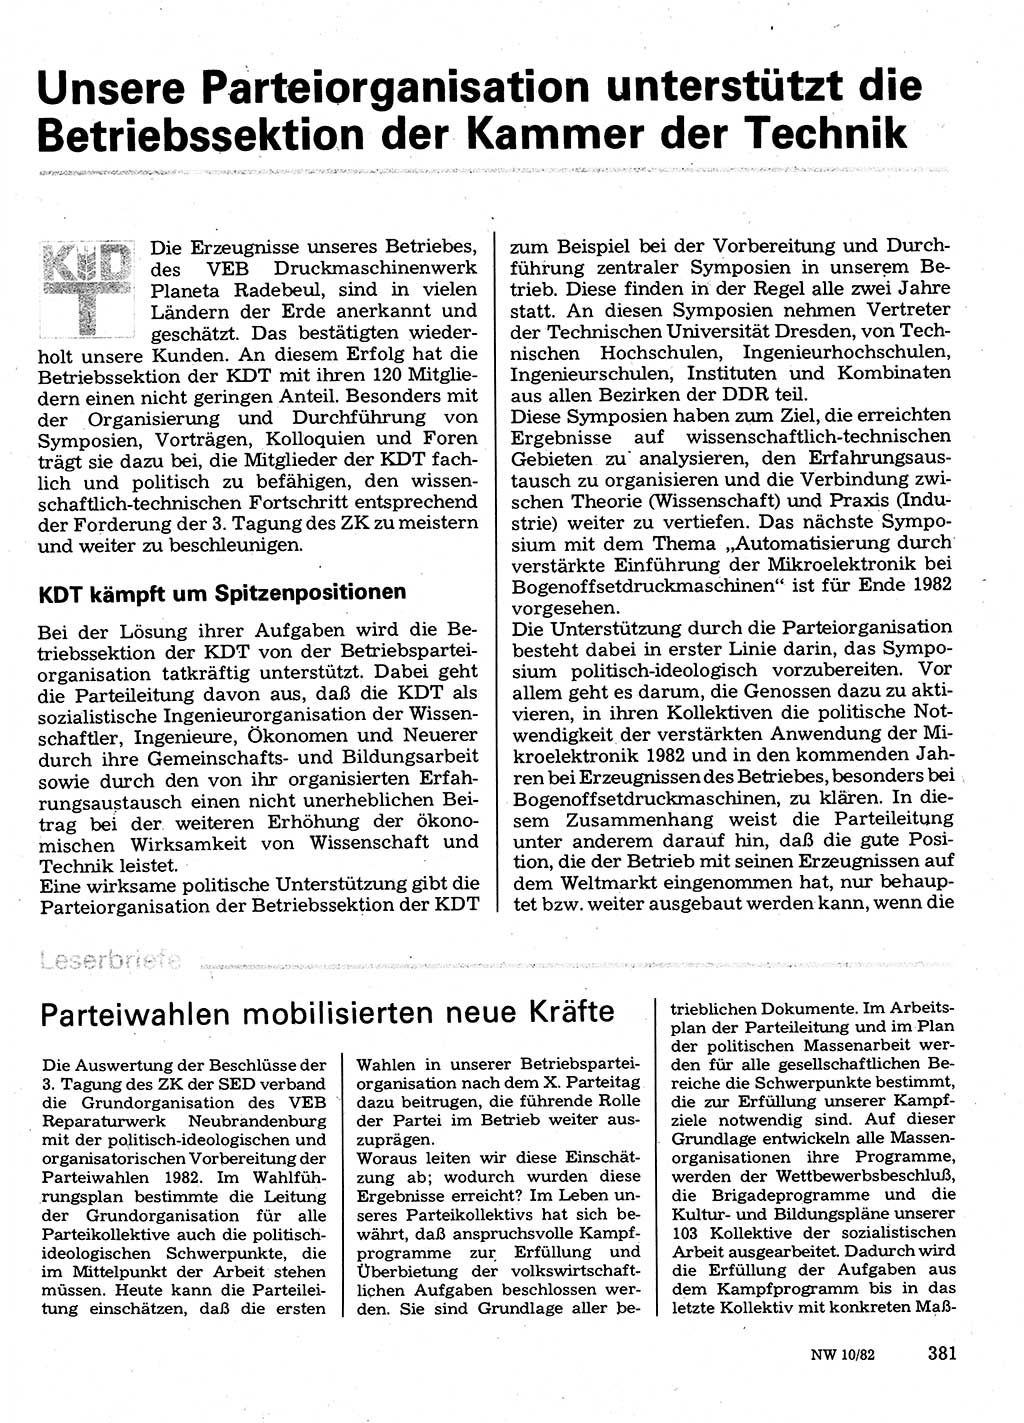 Neuer Weg (NW), Organ des Zentralkomitees (ZK) der SED (Sozialistische Einheitspartei Deutschlands) für Fragen des Parteilebens, 37. Jahrgang [Deutsche Demokratische Republik (DDR)] 1982, Seite 381 (NW ZK SED DDR 1982, S. 381)